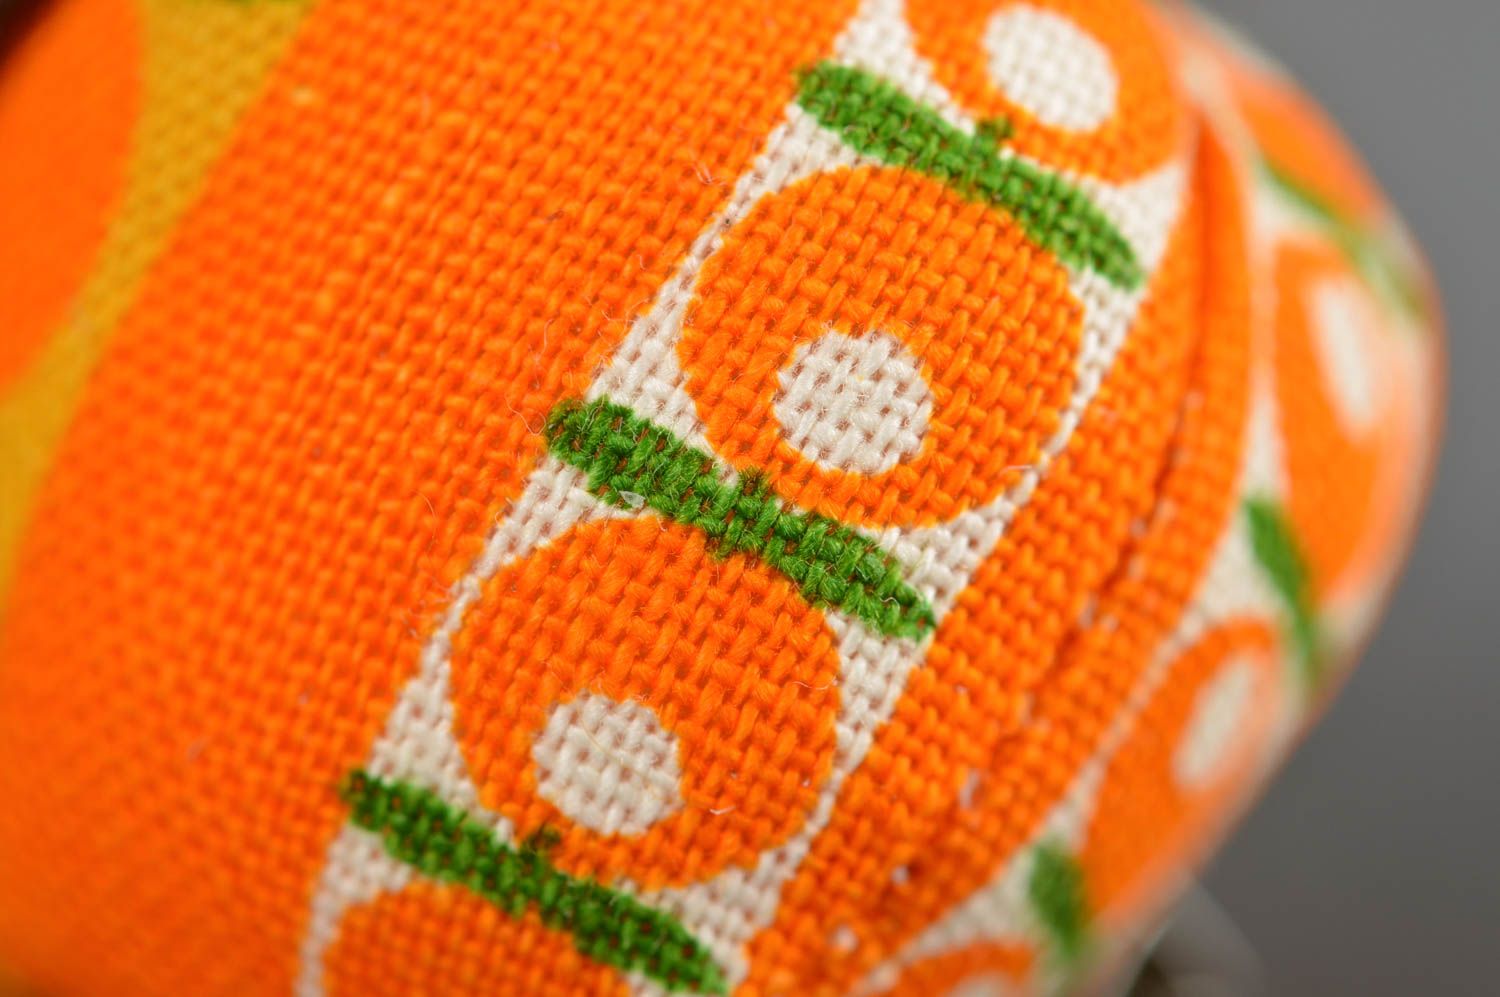 Брошь ручной работы дизайнерское украшение текстильная брошь апельсин авторская фото 5